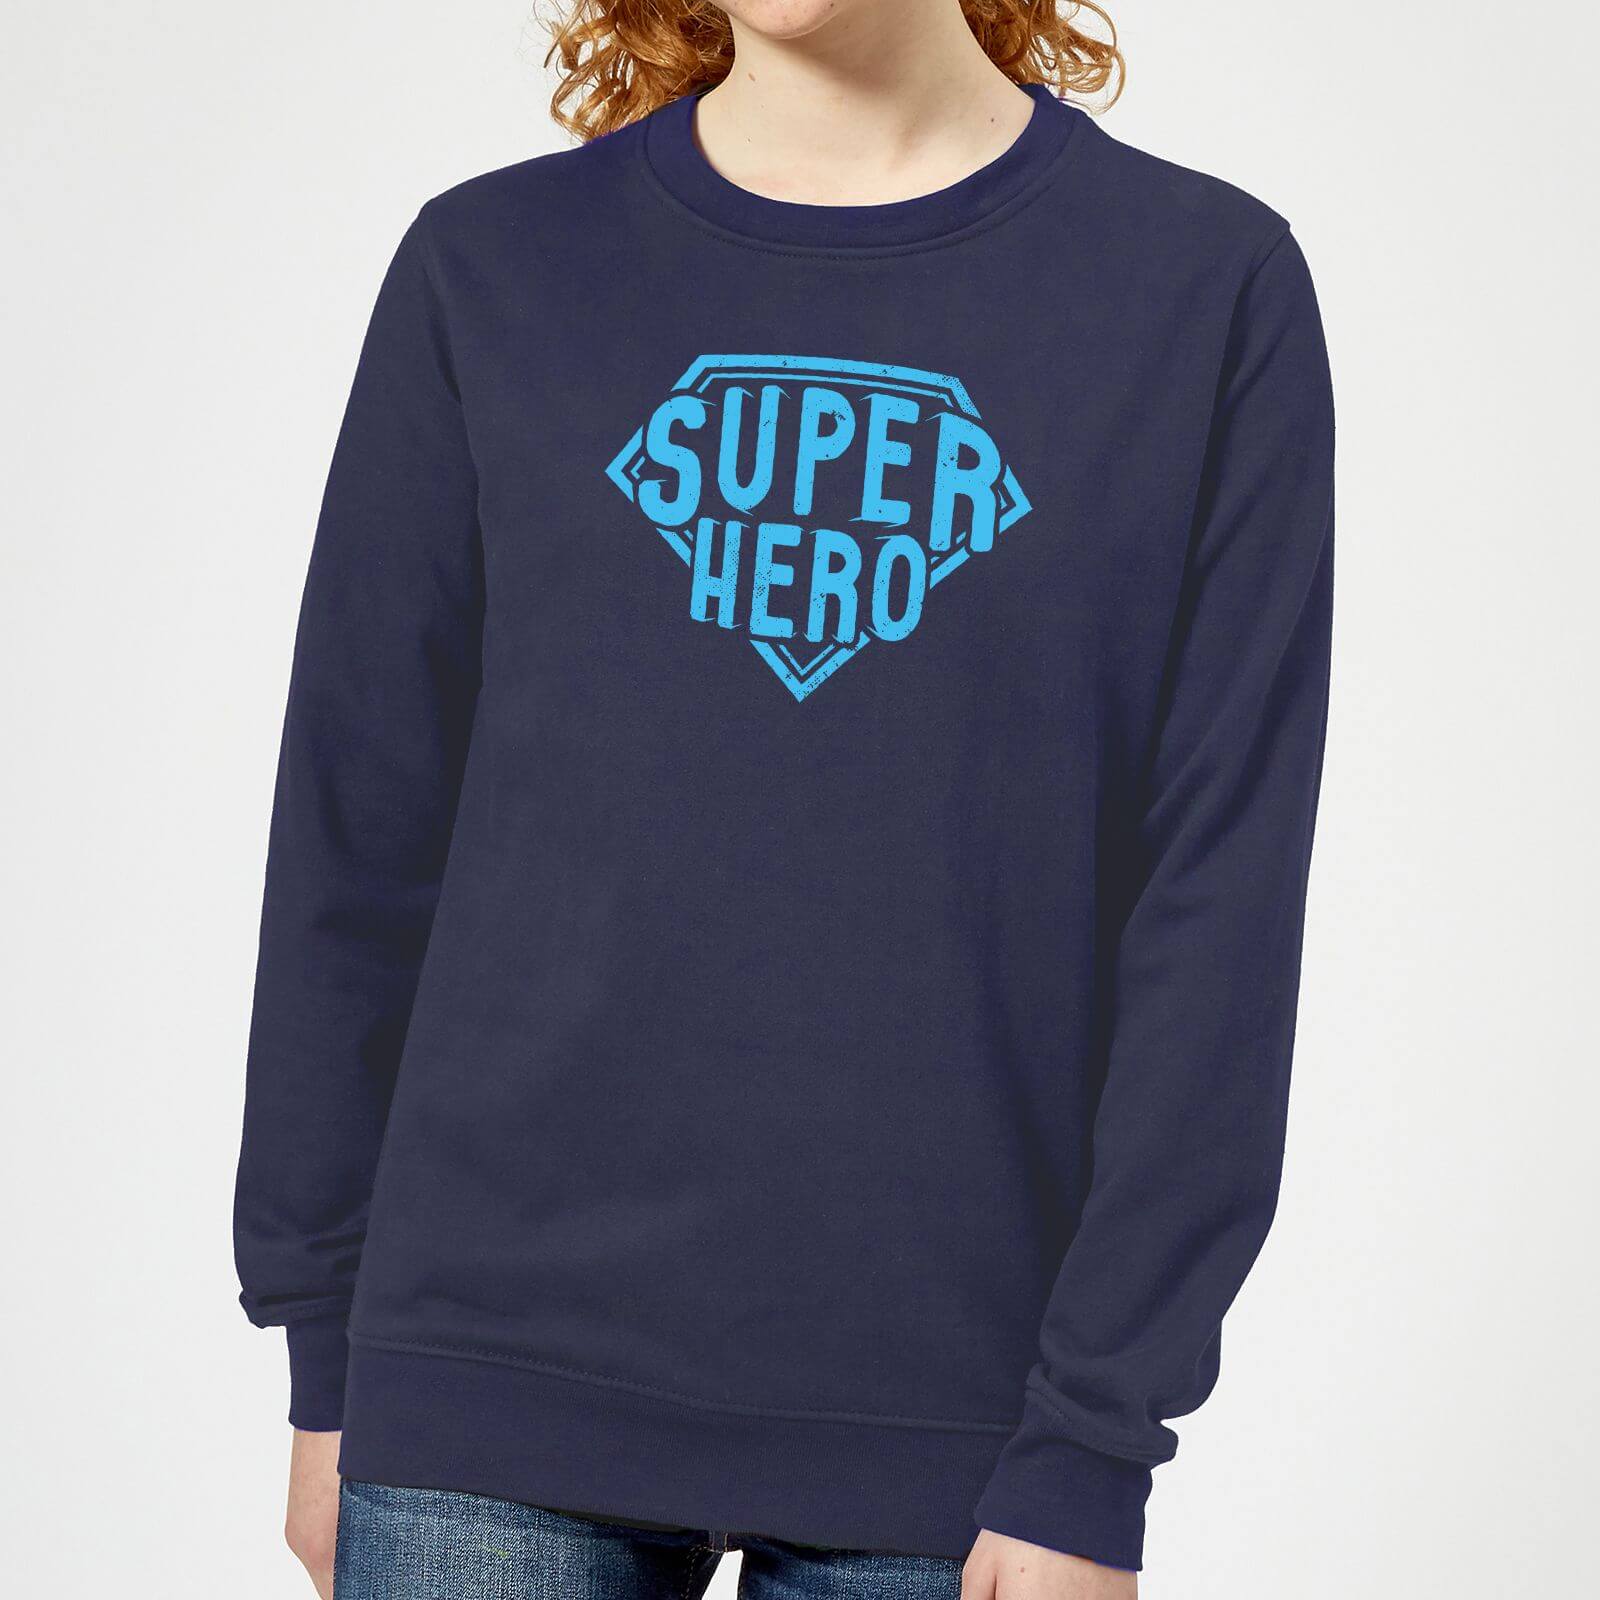 Super Hero Women's Sweatshirt - Navy - XL - Navy